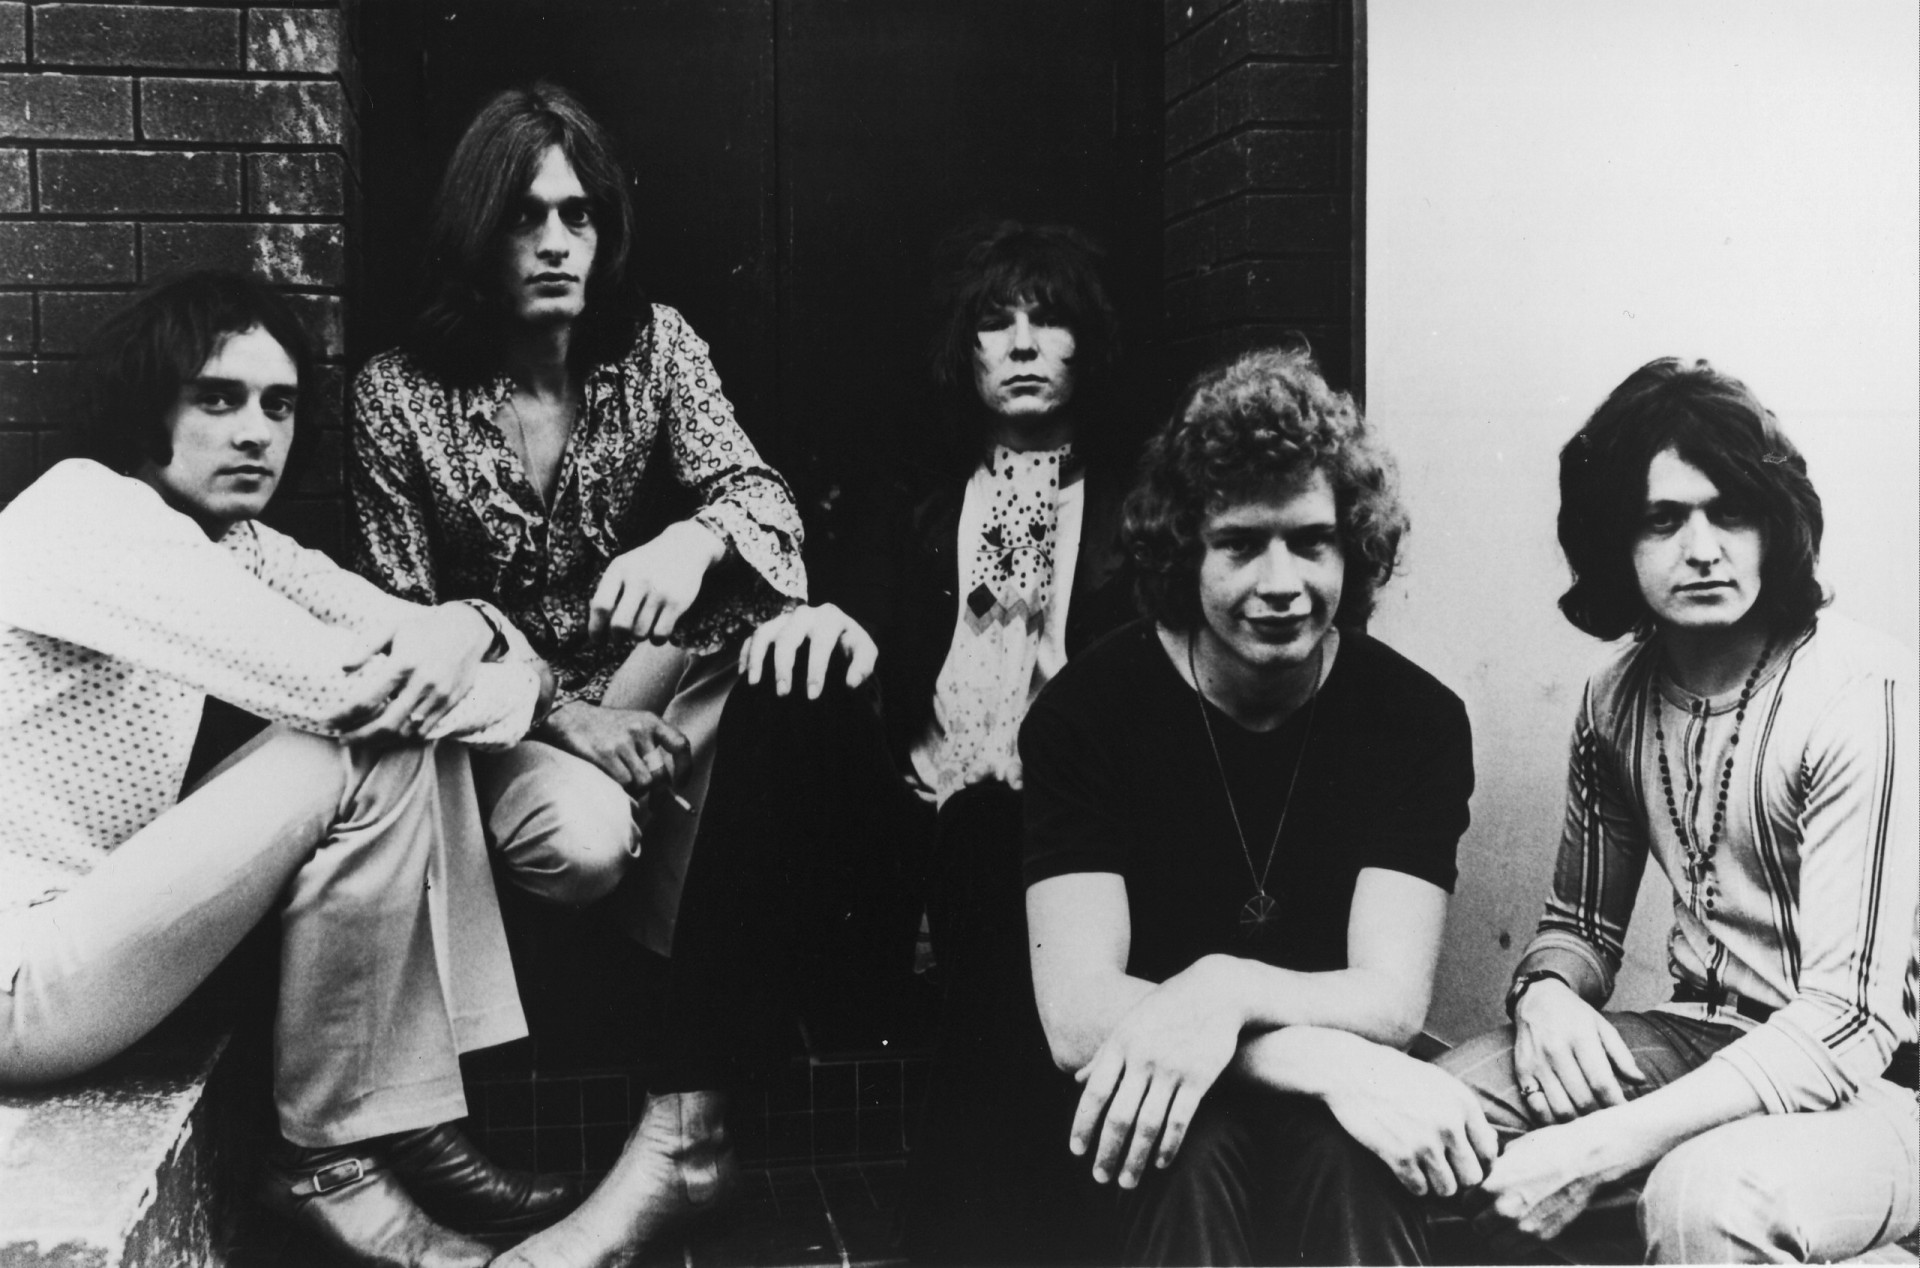 <p>Eine weitere Band, die in den 1970er Jahren Weltruhm erlangte, war Yes. Die 1968 gegründete Band, bestehend aus Peter Banks, Tony Kaye, Chris Squire, Bill Bruford und Jon Anderson, war für das 1970er-Album "Time and a Word" verantwortlich, bevor das Album "The Yes Album" (1971), bei dem Steve Howe Banks ersetzte, von den Kritikern gelobt wurde und die Band zu einem herausragenden Progrock-Act machte.</p><p>Sie können auch mögen:<a href="https://de.starsinsider.com/n/345850?utm_source=msn.com&utm_medium=display&utm_campaign=referral_description&utm_content=545349"> Celine Dion: Einzigartige Sängerin und Modeikone</a></p>